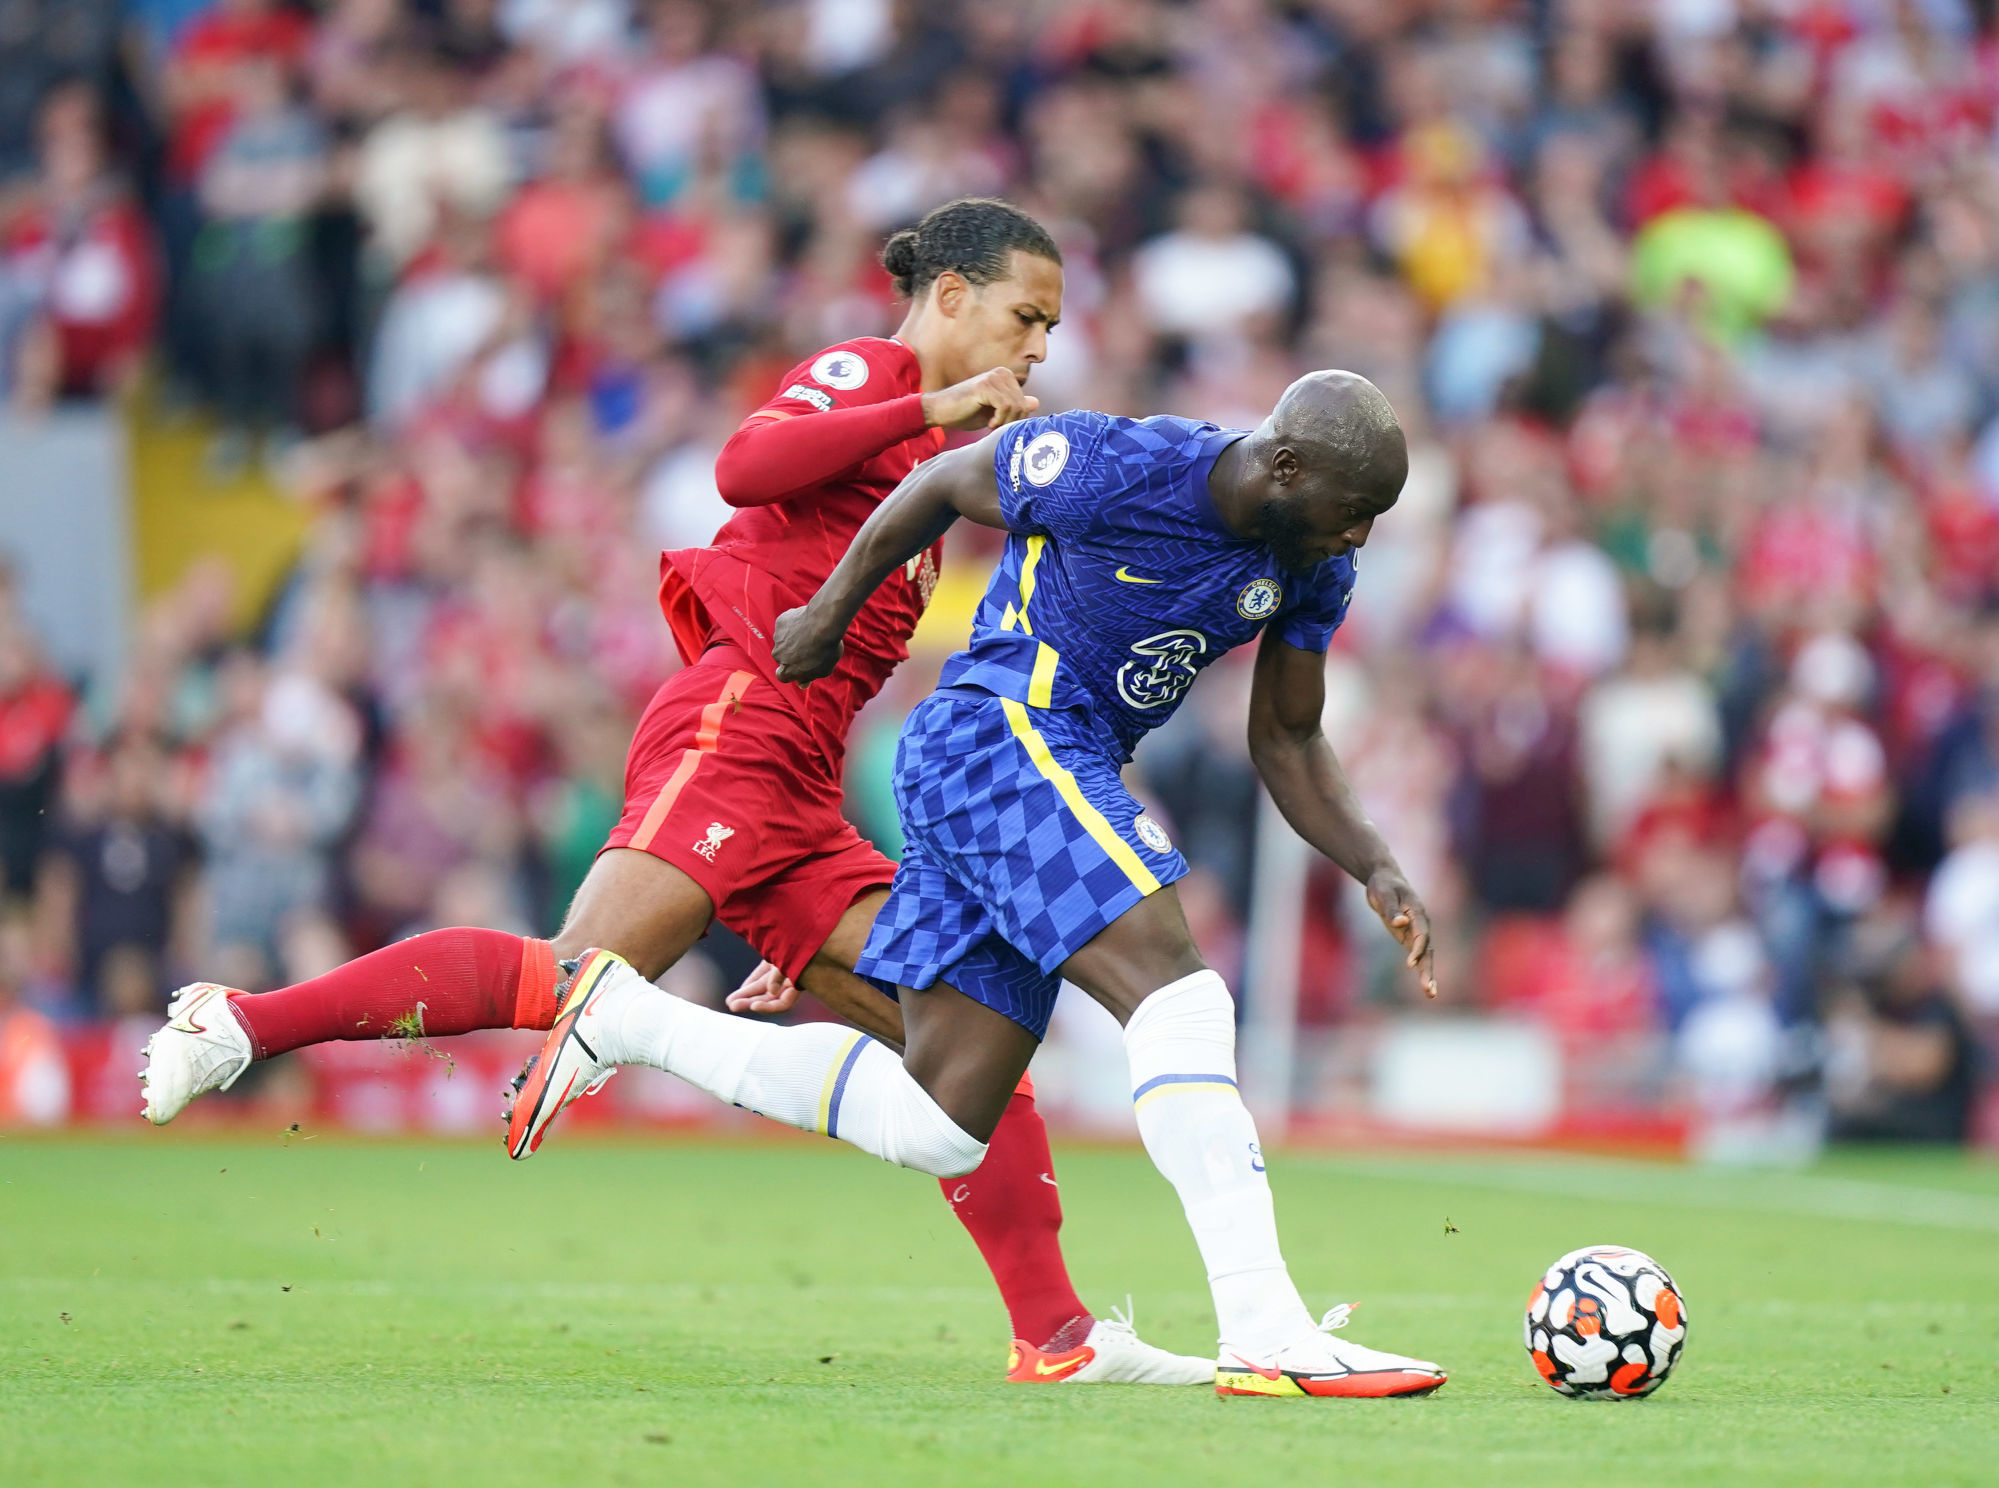 Chelsea - Liverpool : les compositions probables avec Salah et Lukaku